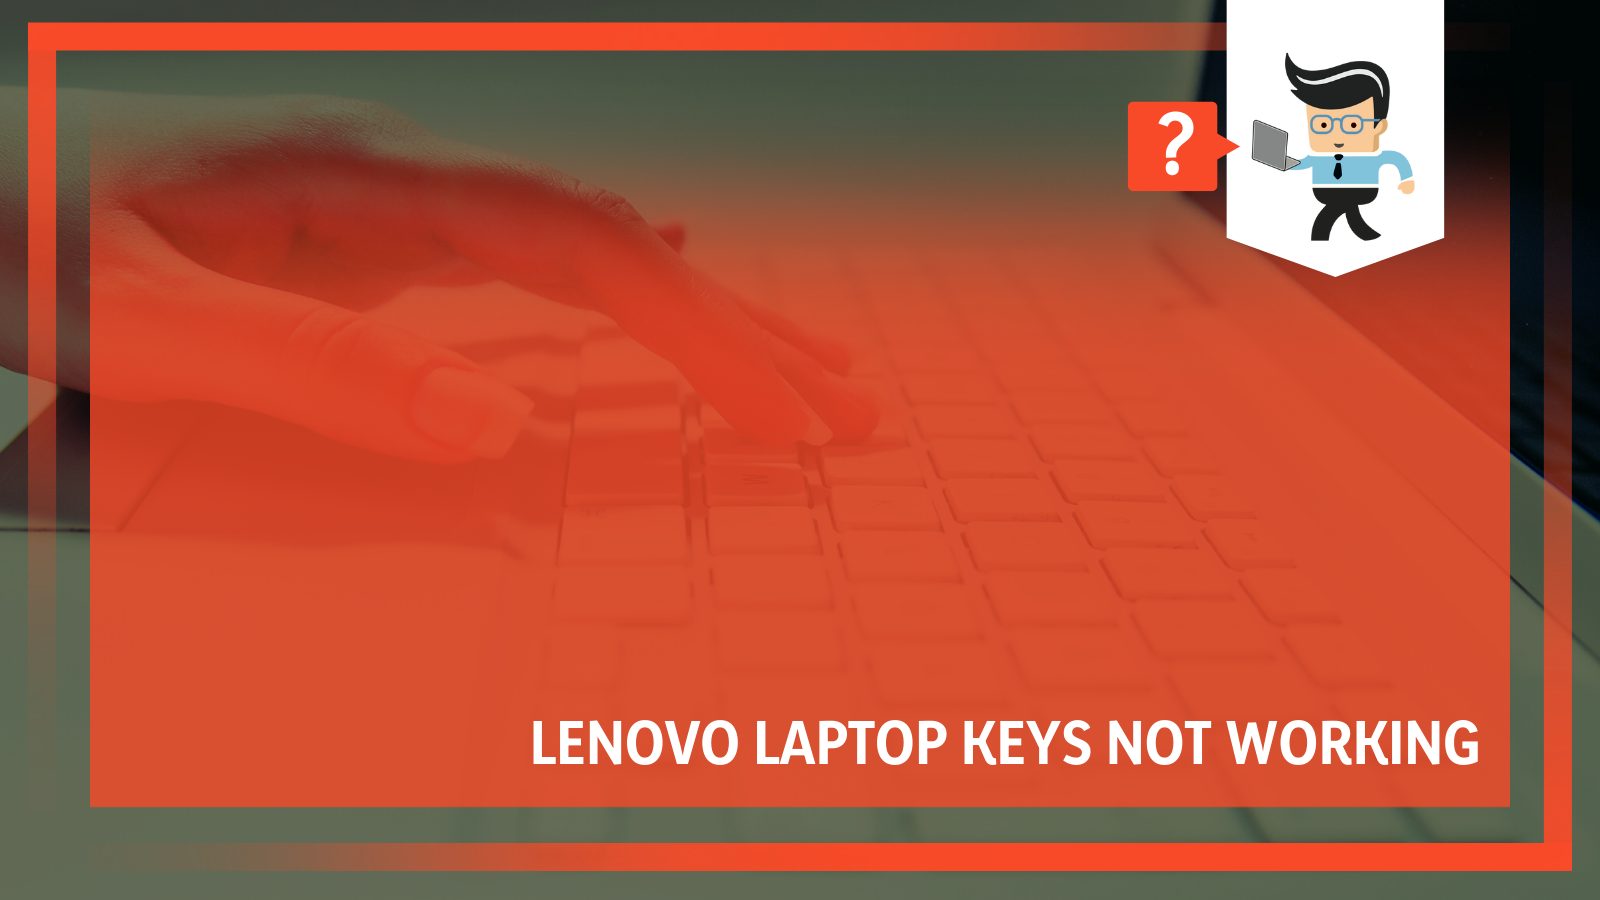 Lenovo laptop keys not working